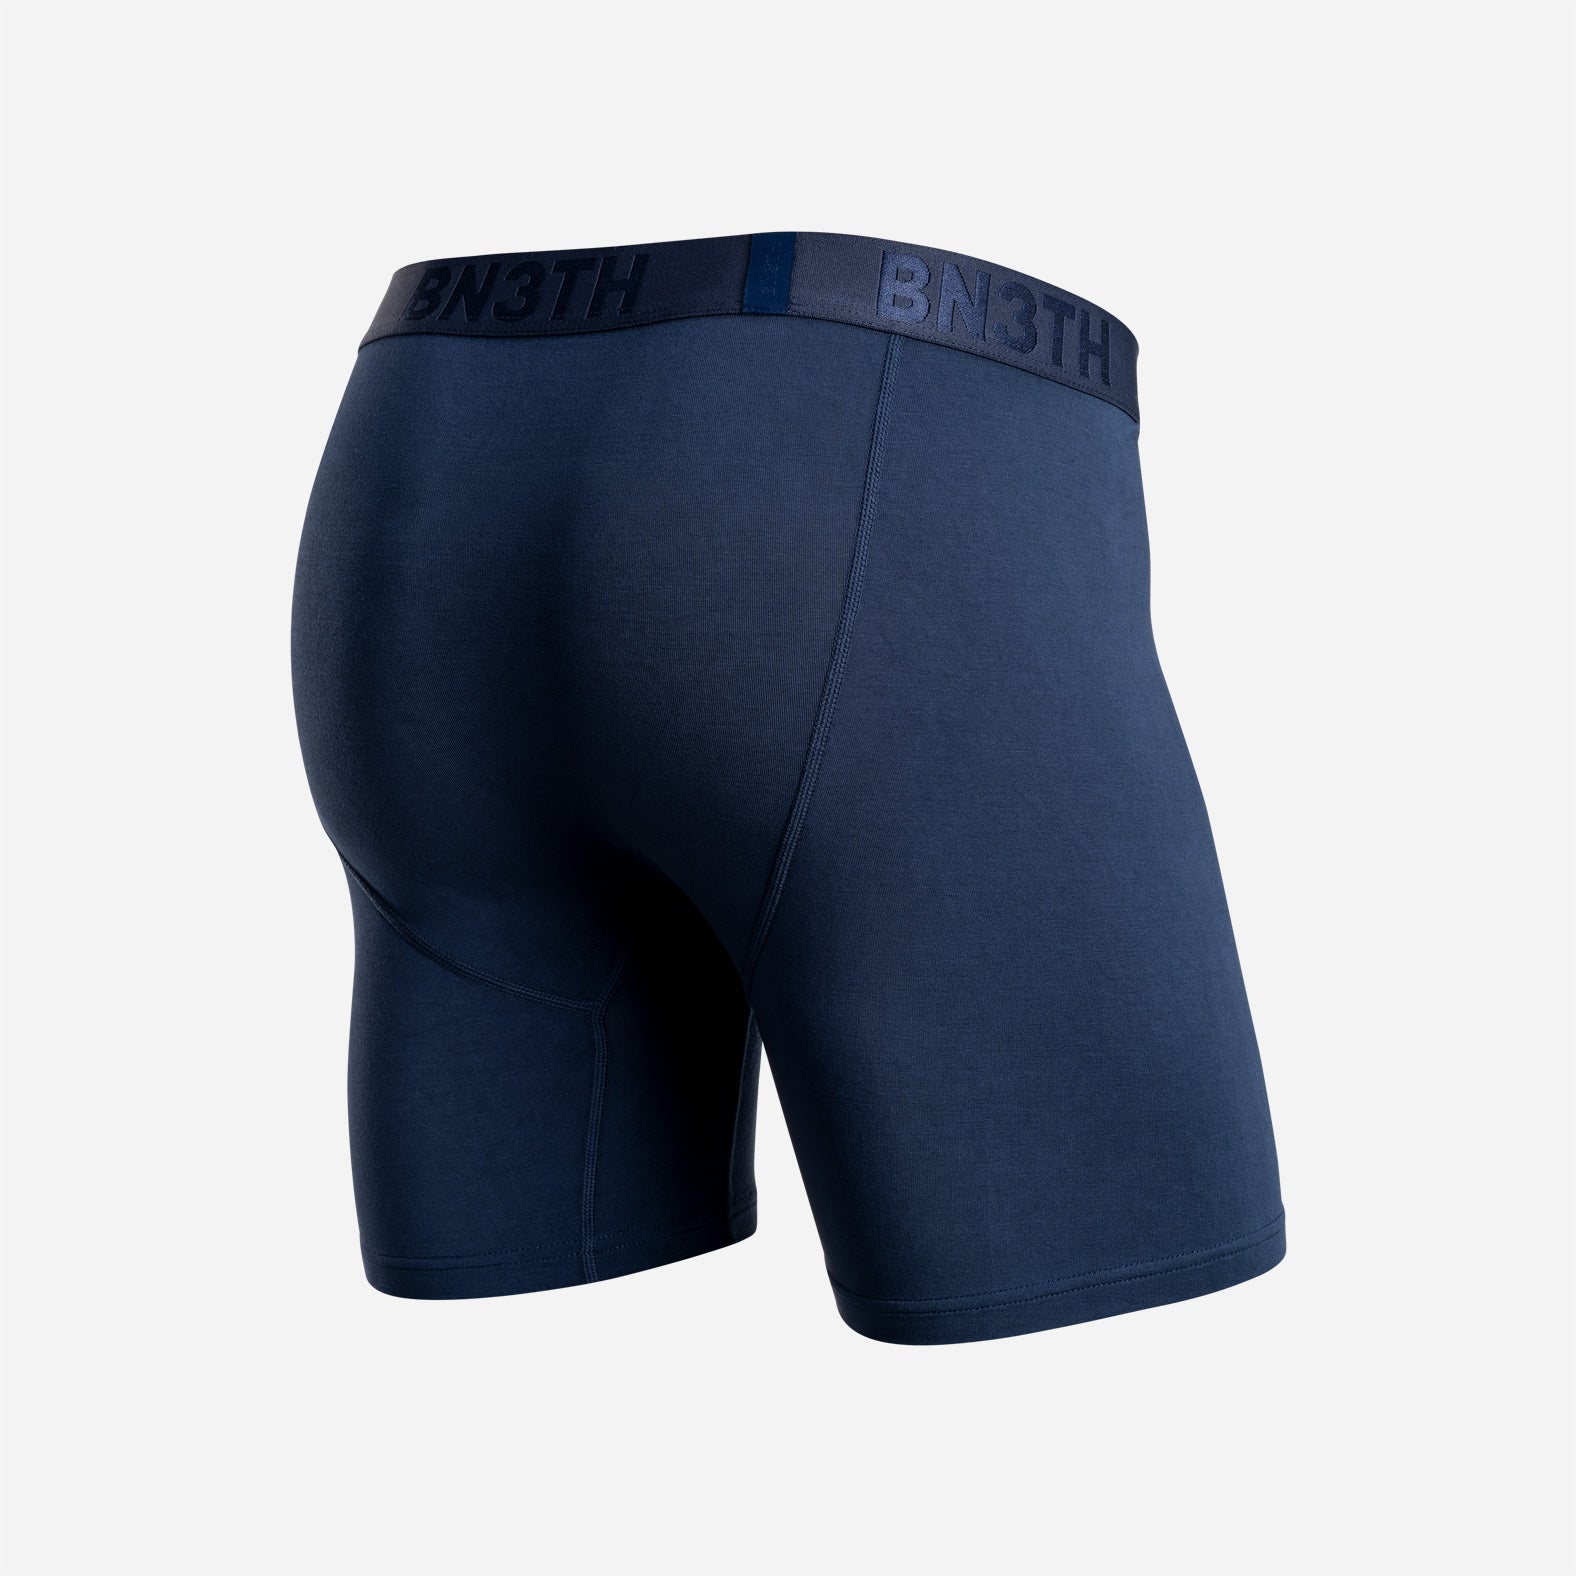 Classic Boxer Brief: BN3TH Underwear | Navy –